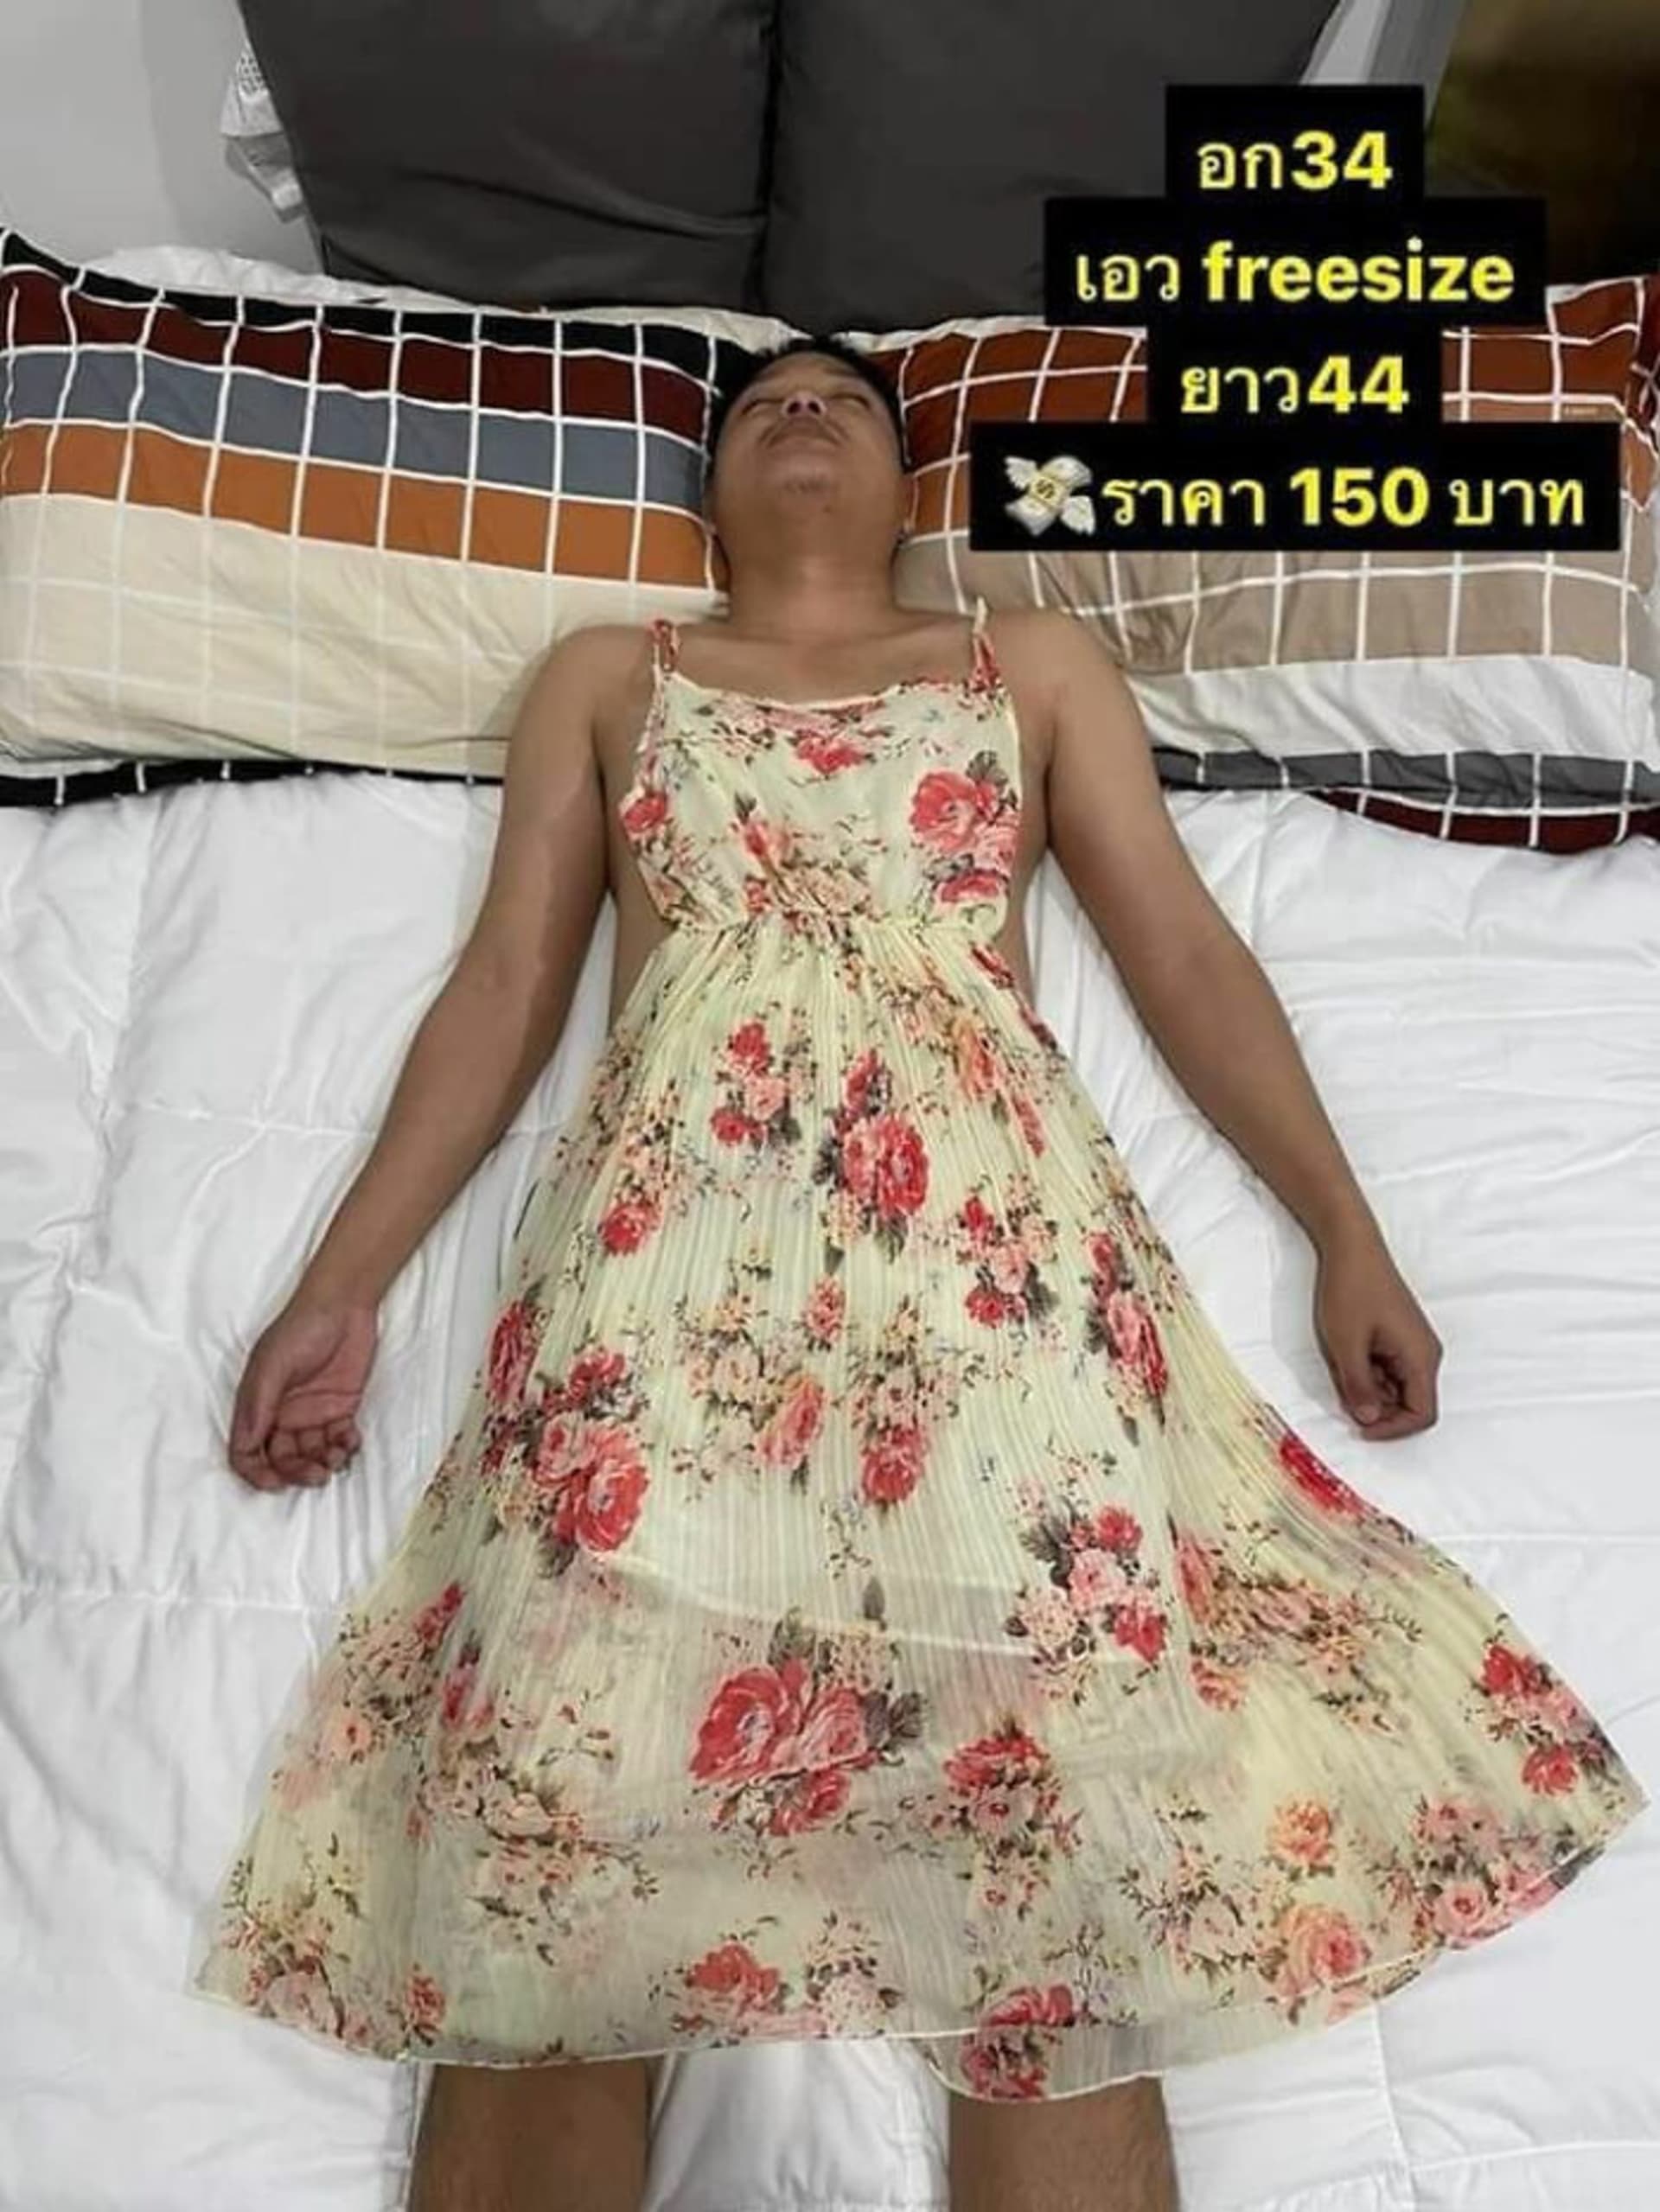 Žena prodává své oblečení na spícím manželovi 1